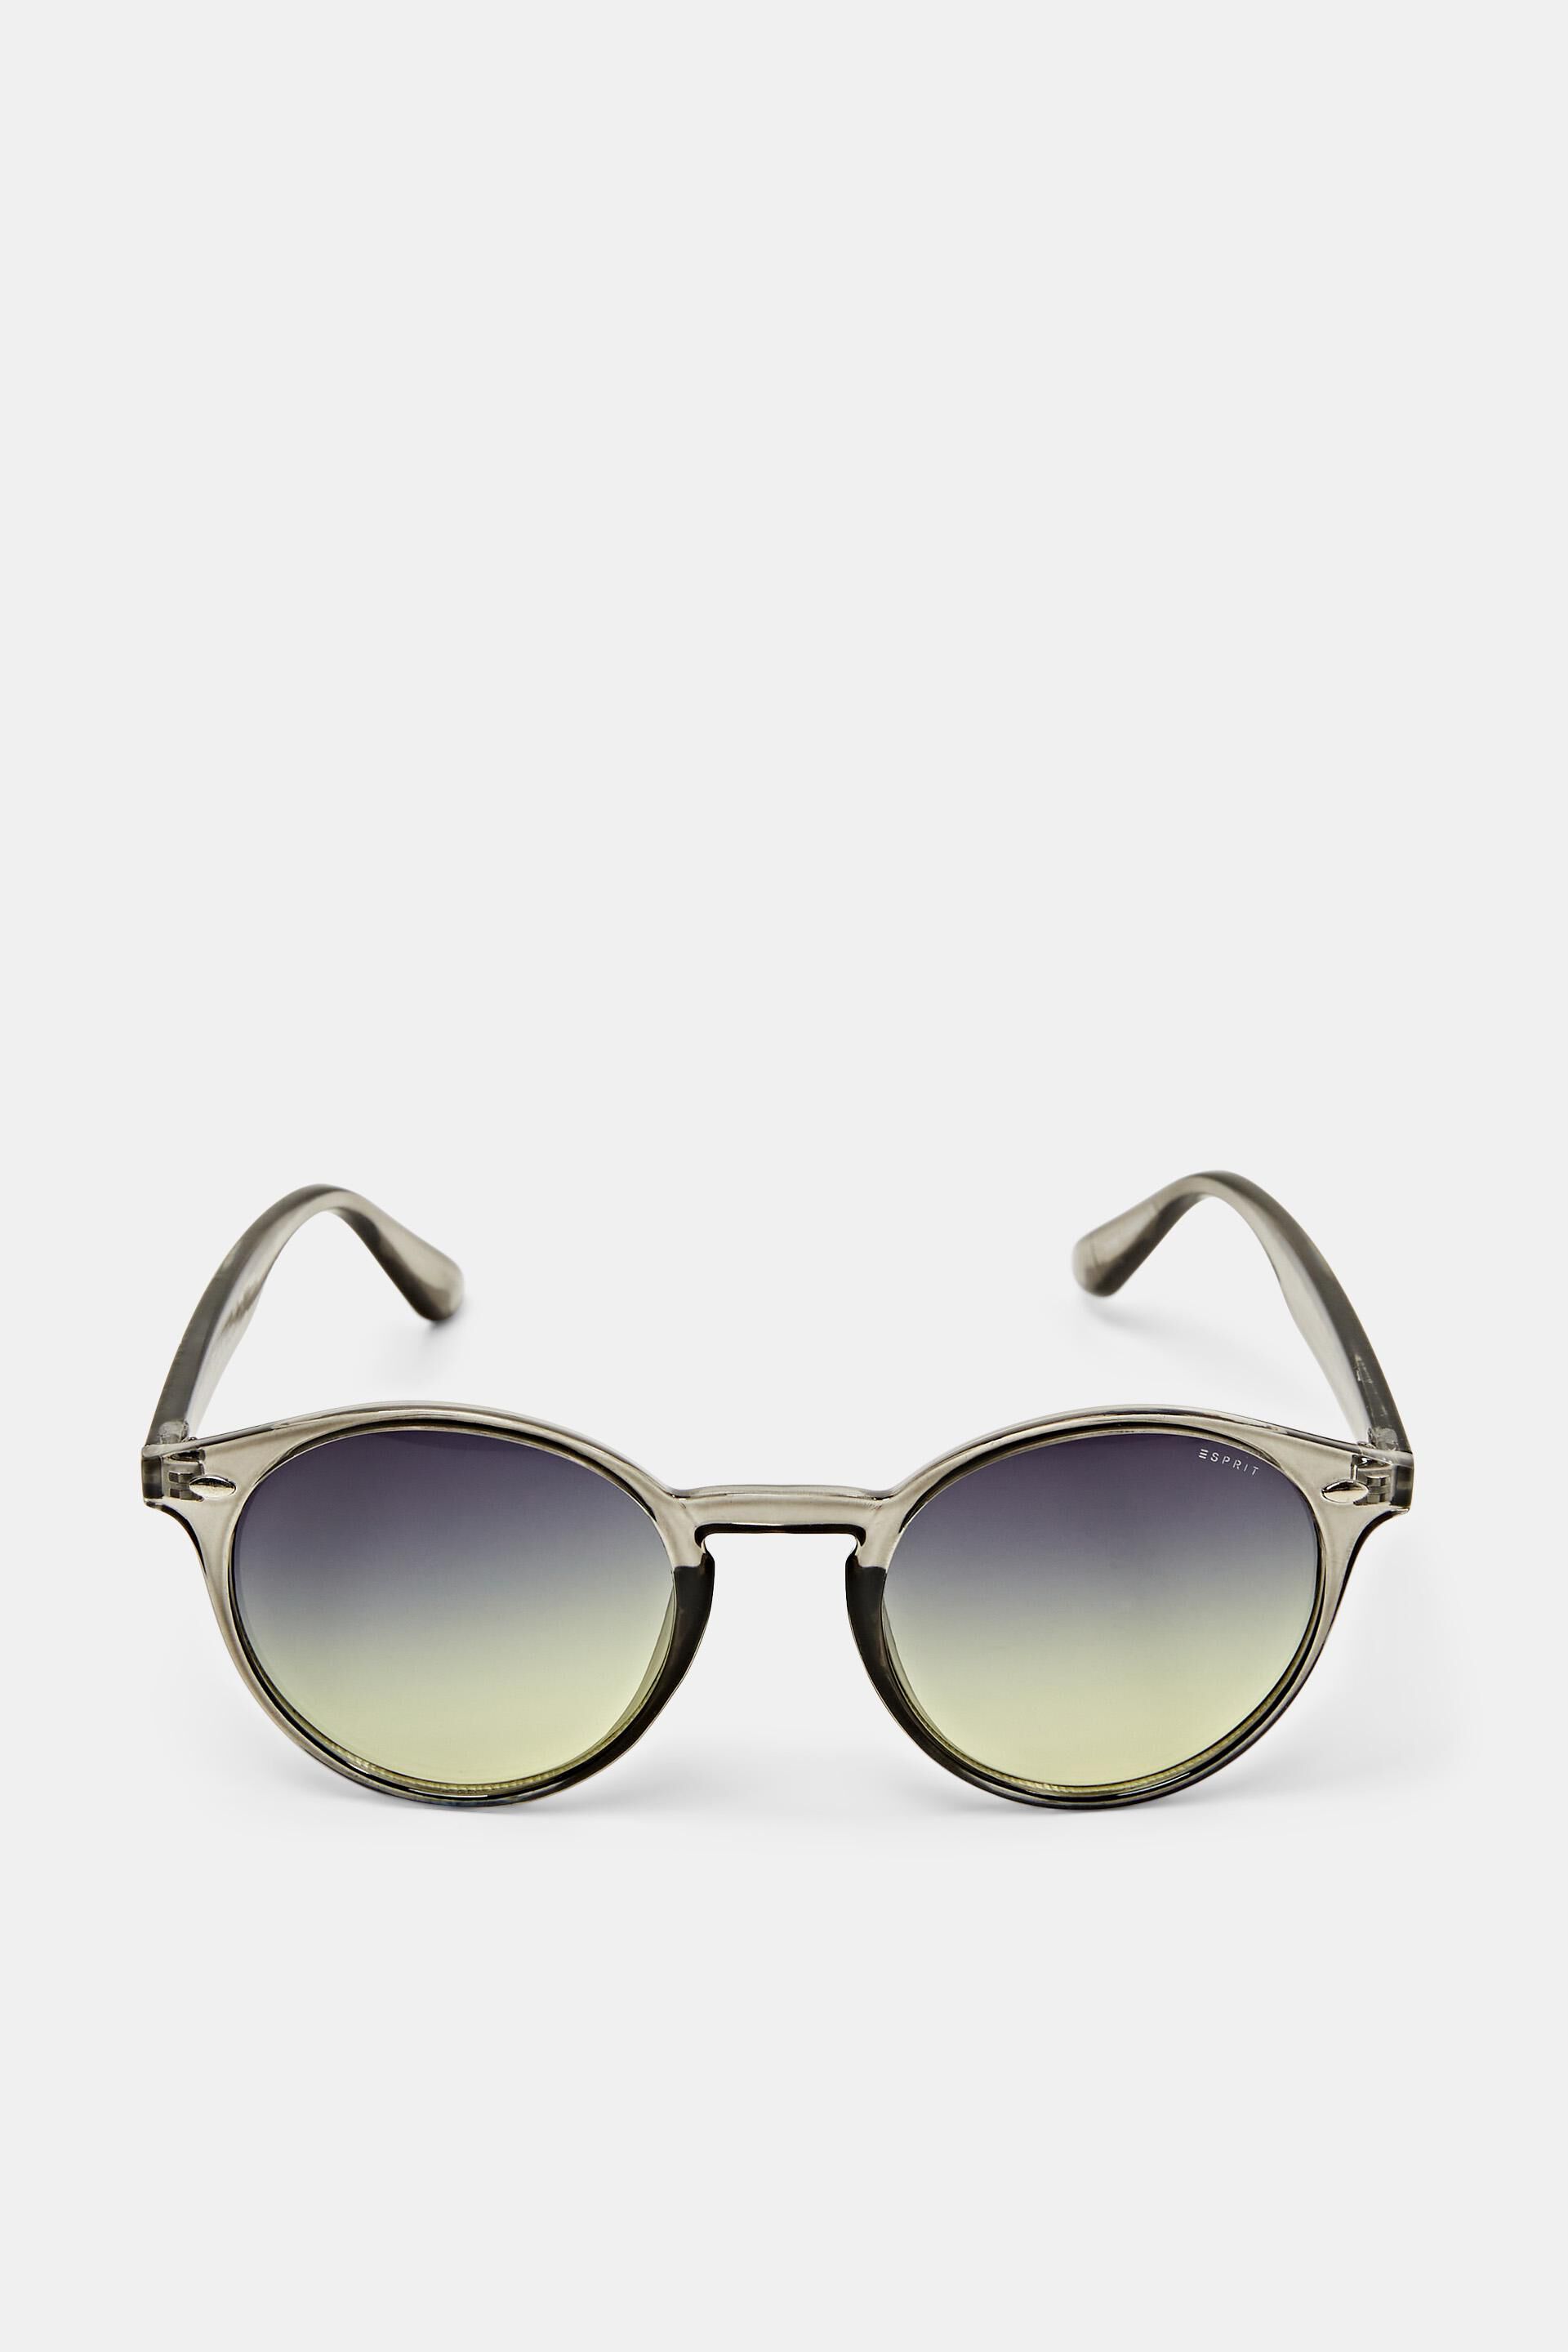 Esprit lenses round with Sunglasses